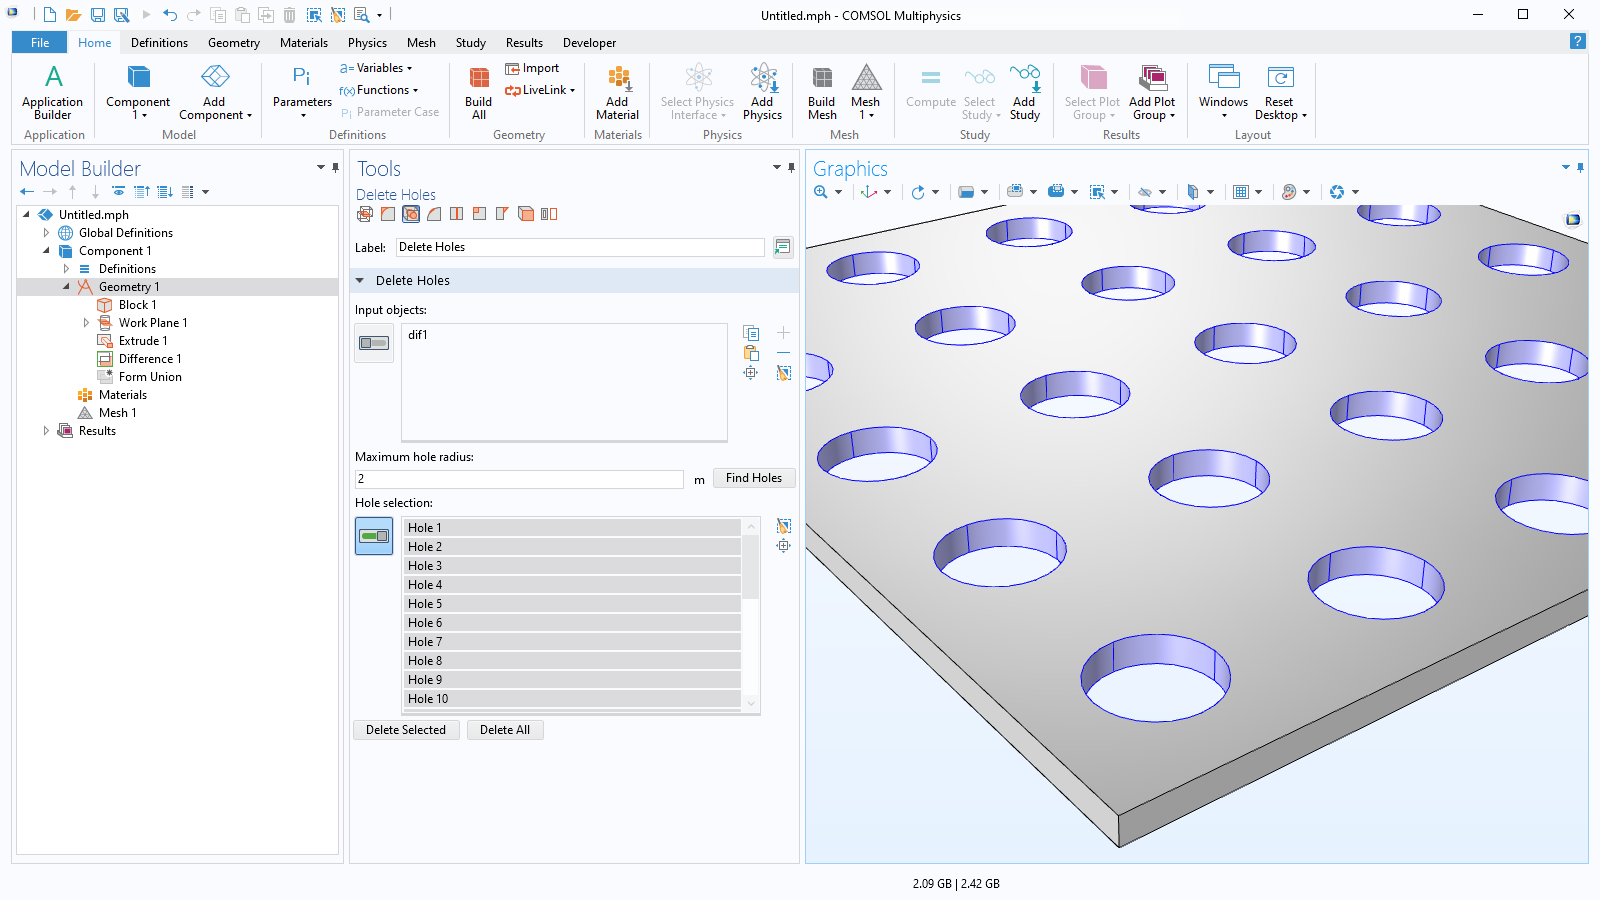 Interfaccia utente di COMSOL Multiphysics che mostra il Model Builder con il nodo Geometry selezionato, le impostazioni dell'operazione Delete Holes e un modello di geometria 3D con 25 fori nella finestra Graphics.